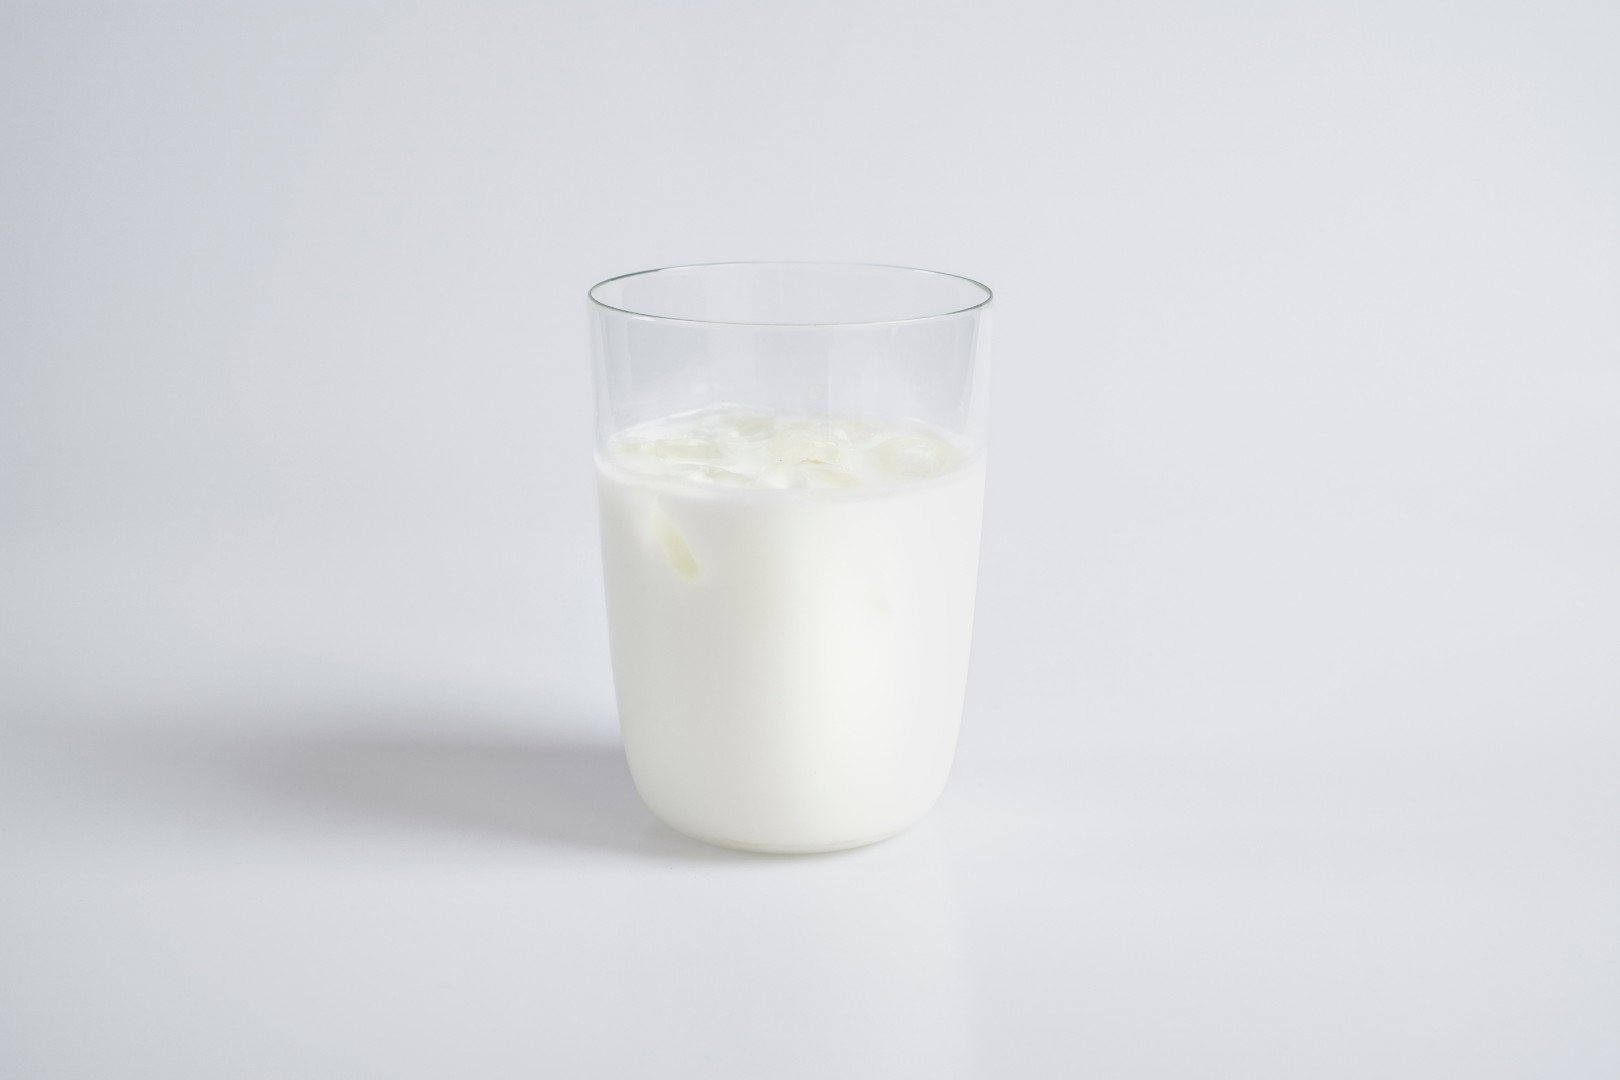 «Общественный контроль» обнаружил разбавленное молоко в торговых сетях Санкт-Петербурга